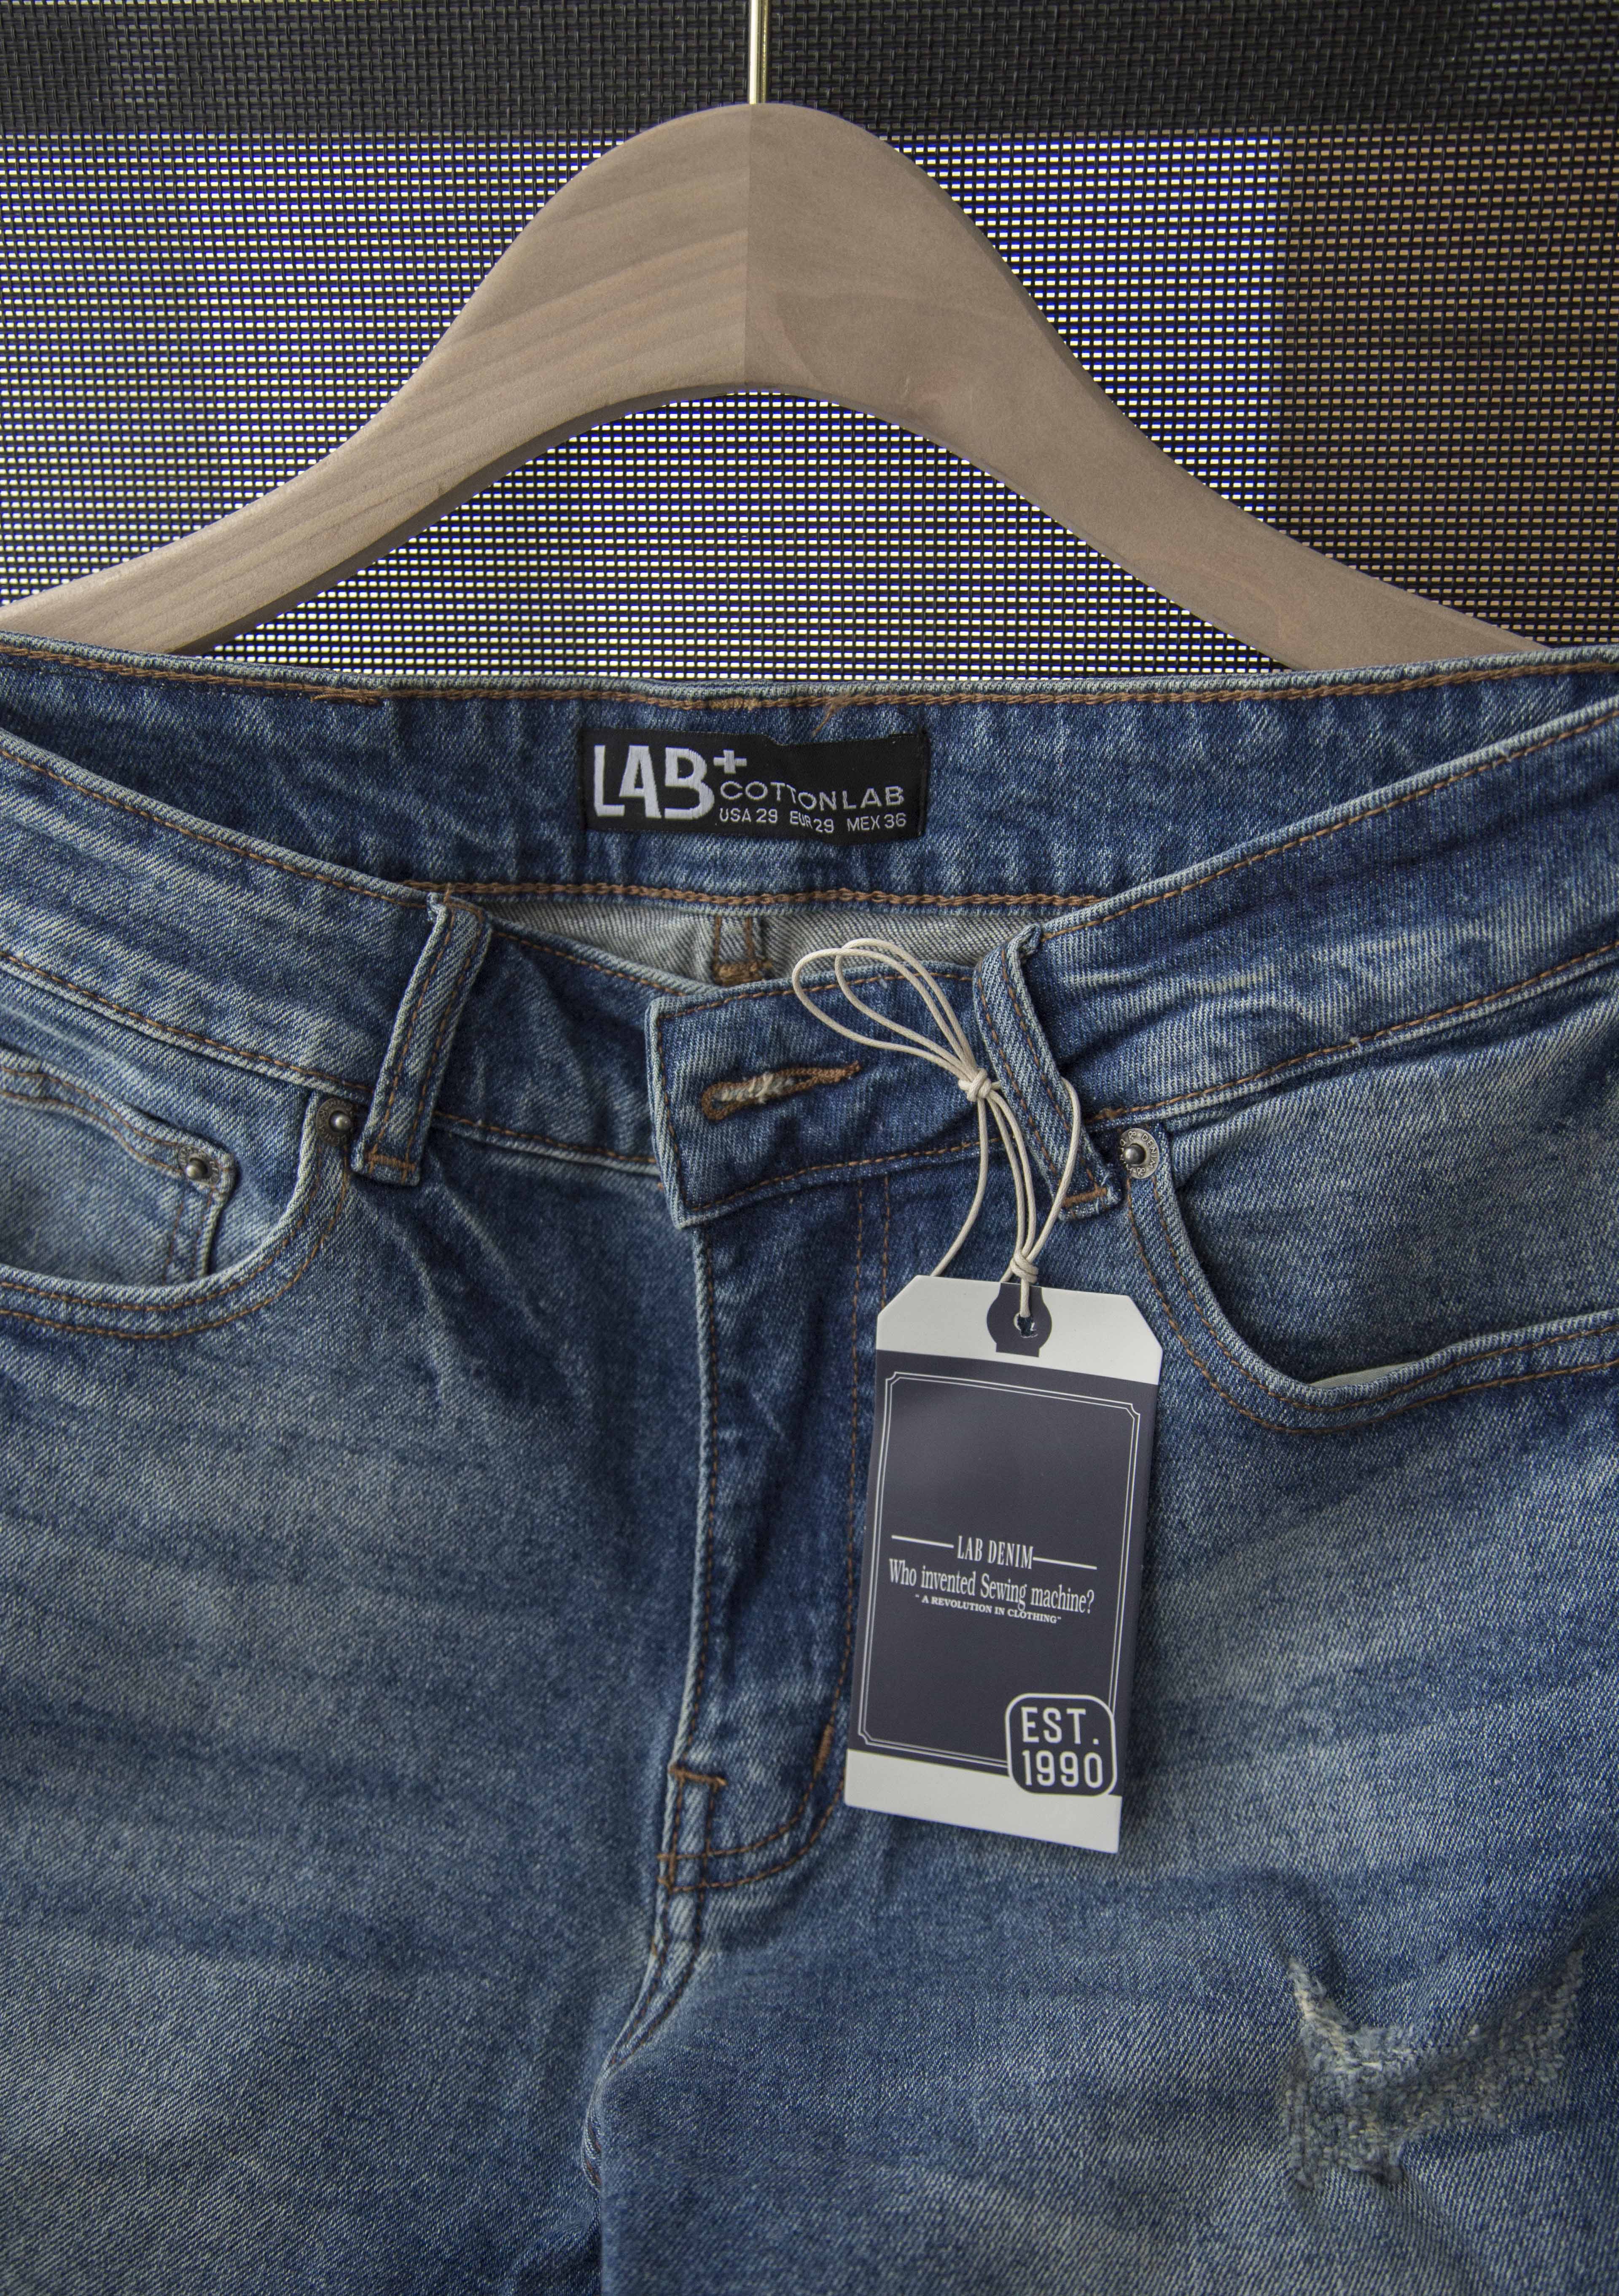 Quần short jean nam xanh đậm rách cao cấp thương hiệu LAB+COTTONLAB - 2253